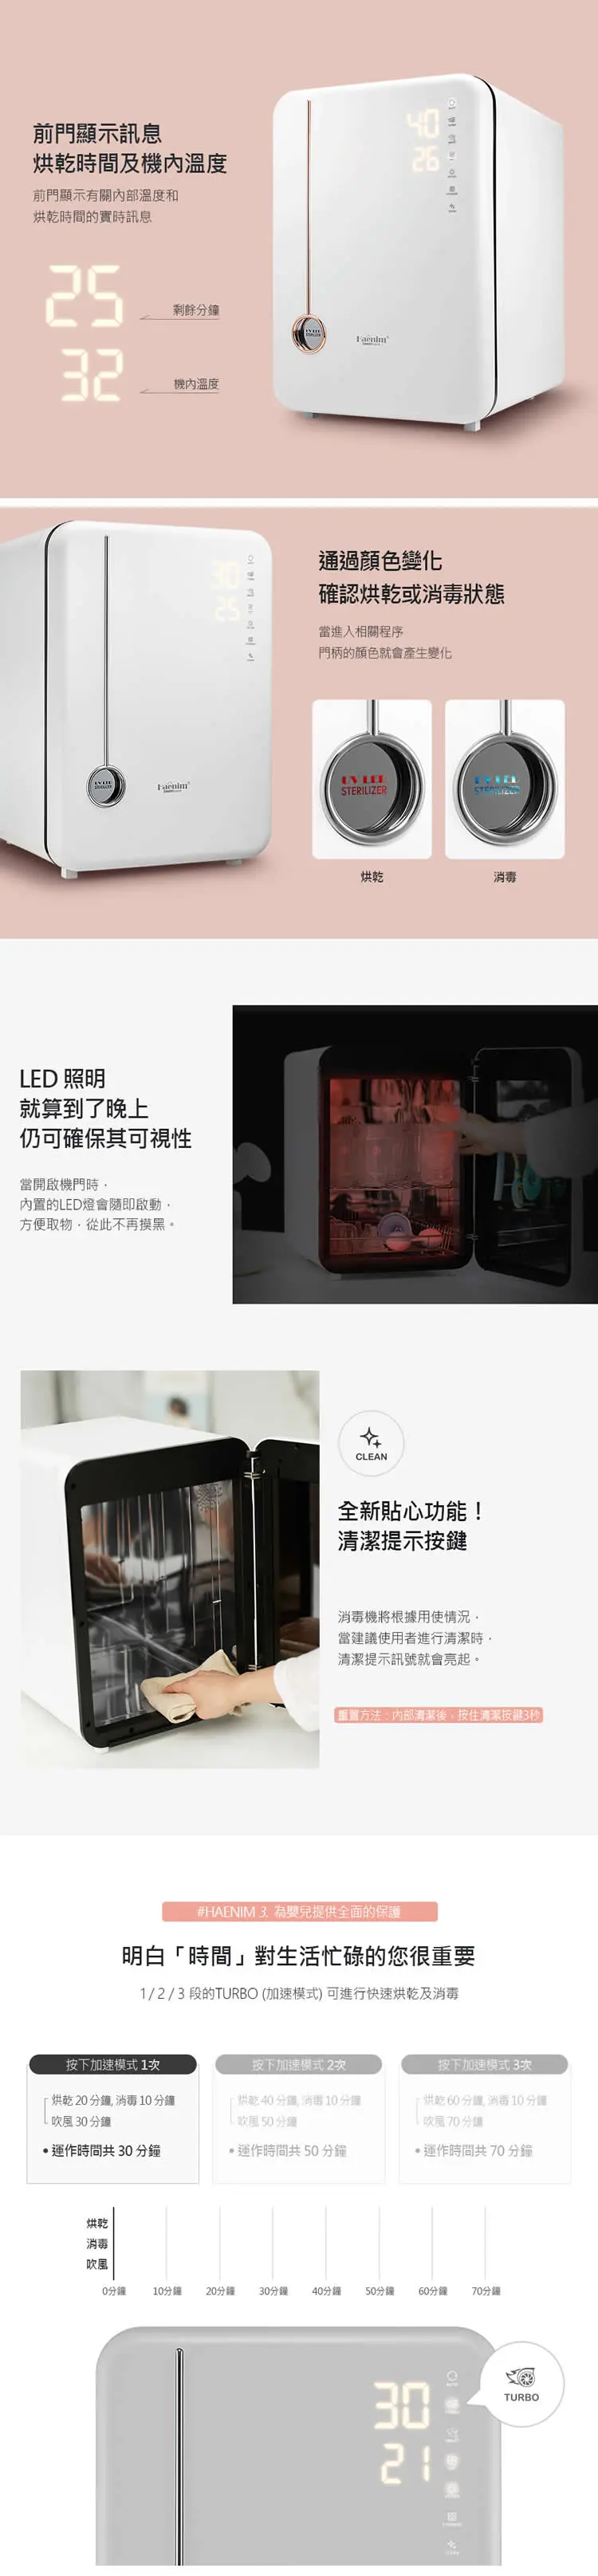 Haenim喜臨 第4代UV LED消毒烘乾機(典雅系列)